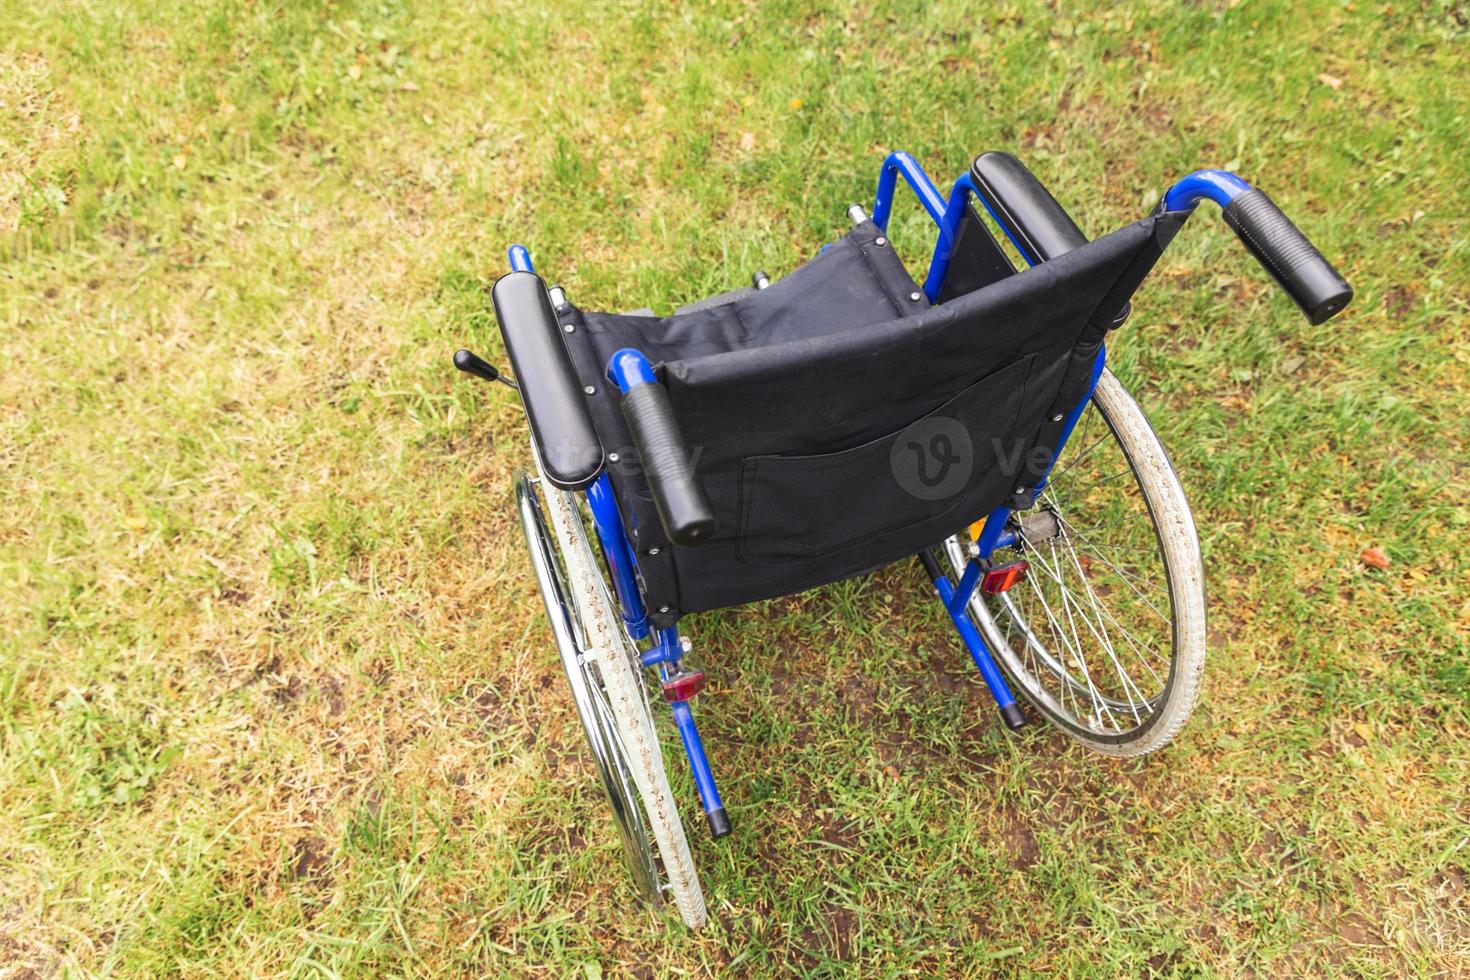 fauteuil roulant vide debout dans le parc de l'hôpital en attente de services aux patients. fauteuil roulant pour personne handicapée garé à l'extérieur. accessible pour personne handicapée. concept médical de soins de santé. photo